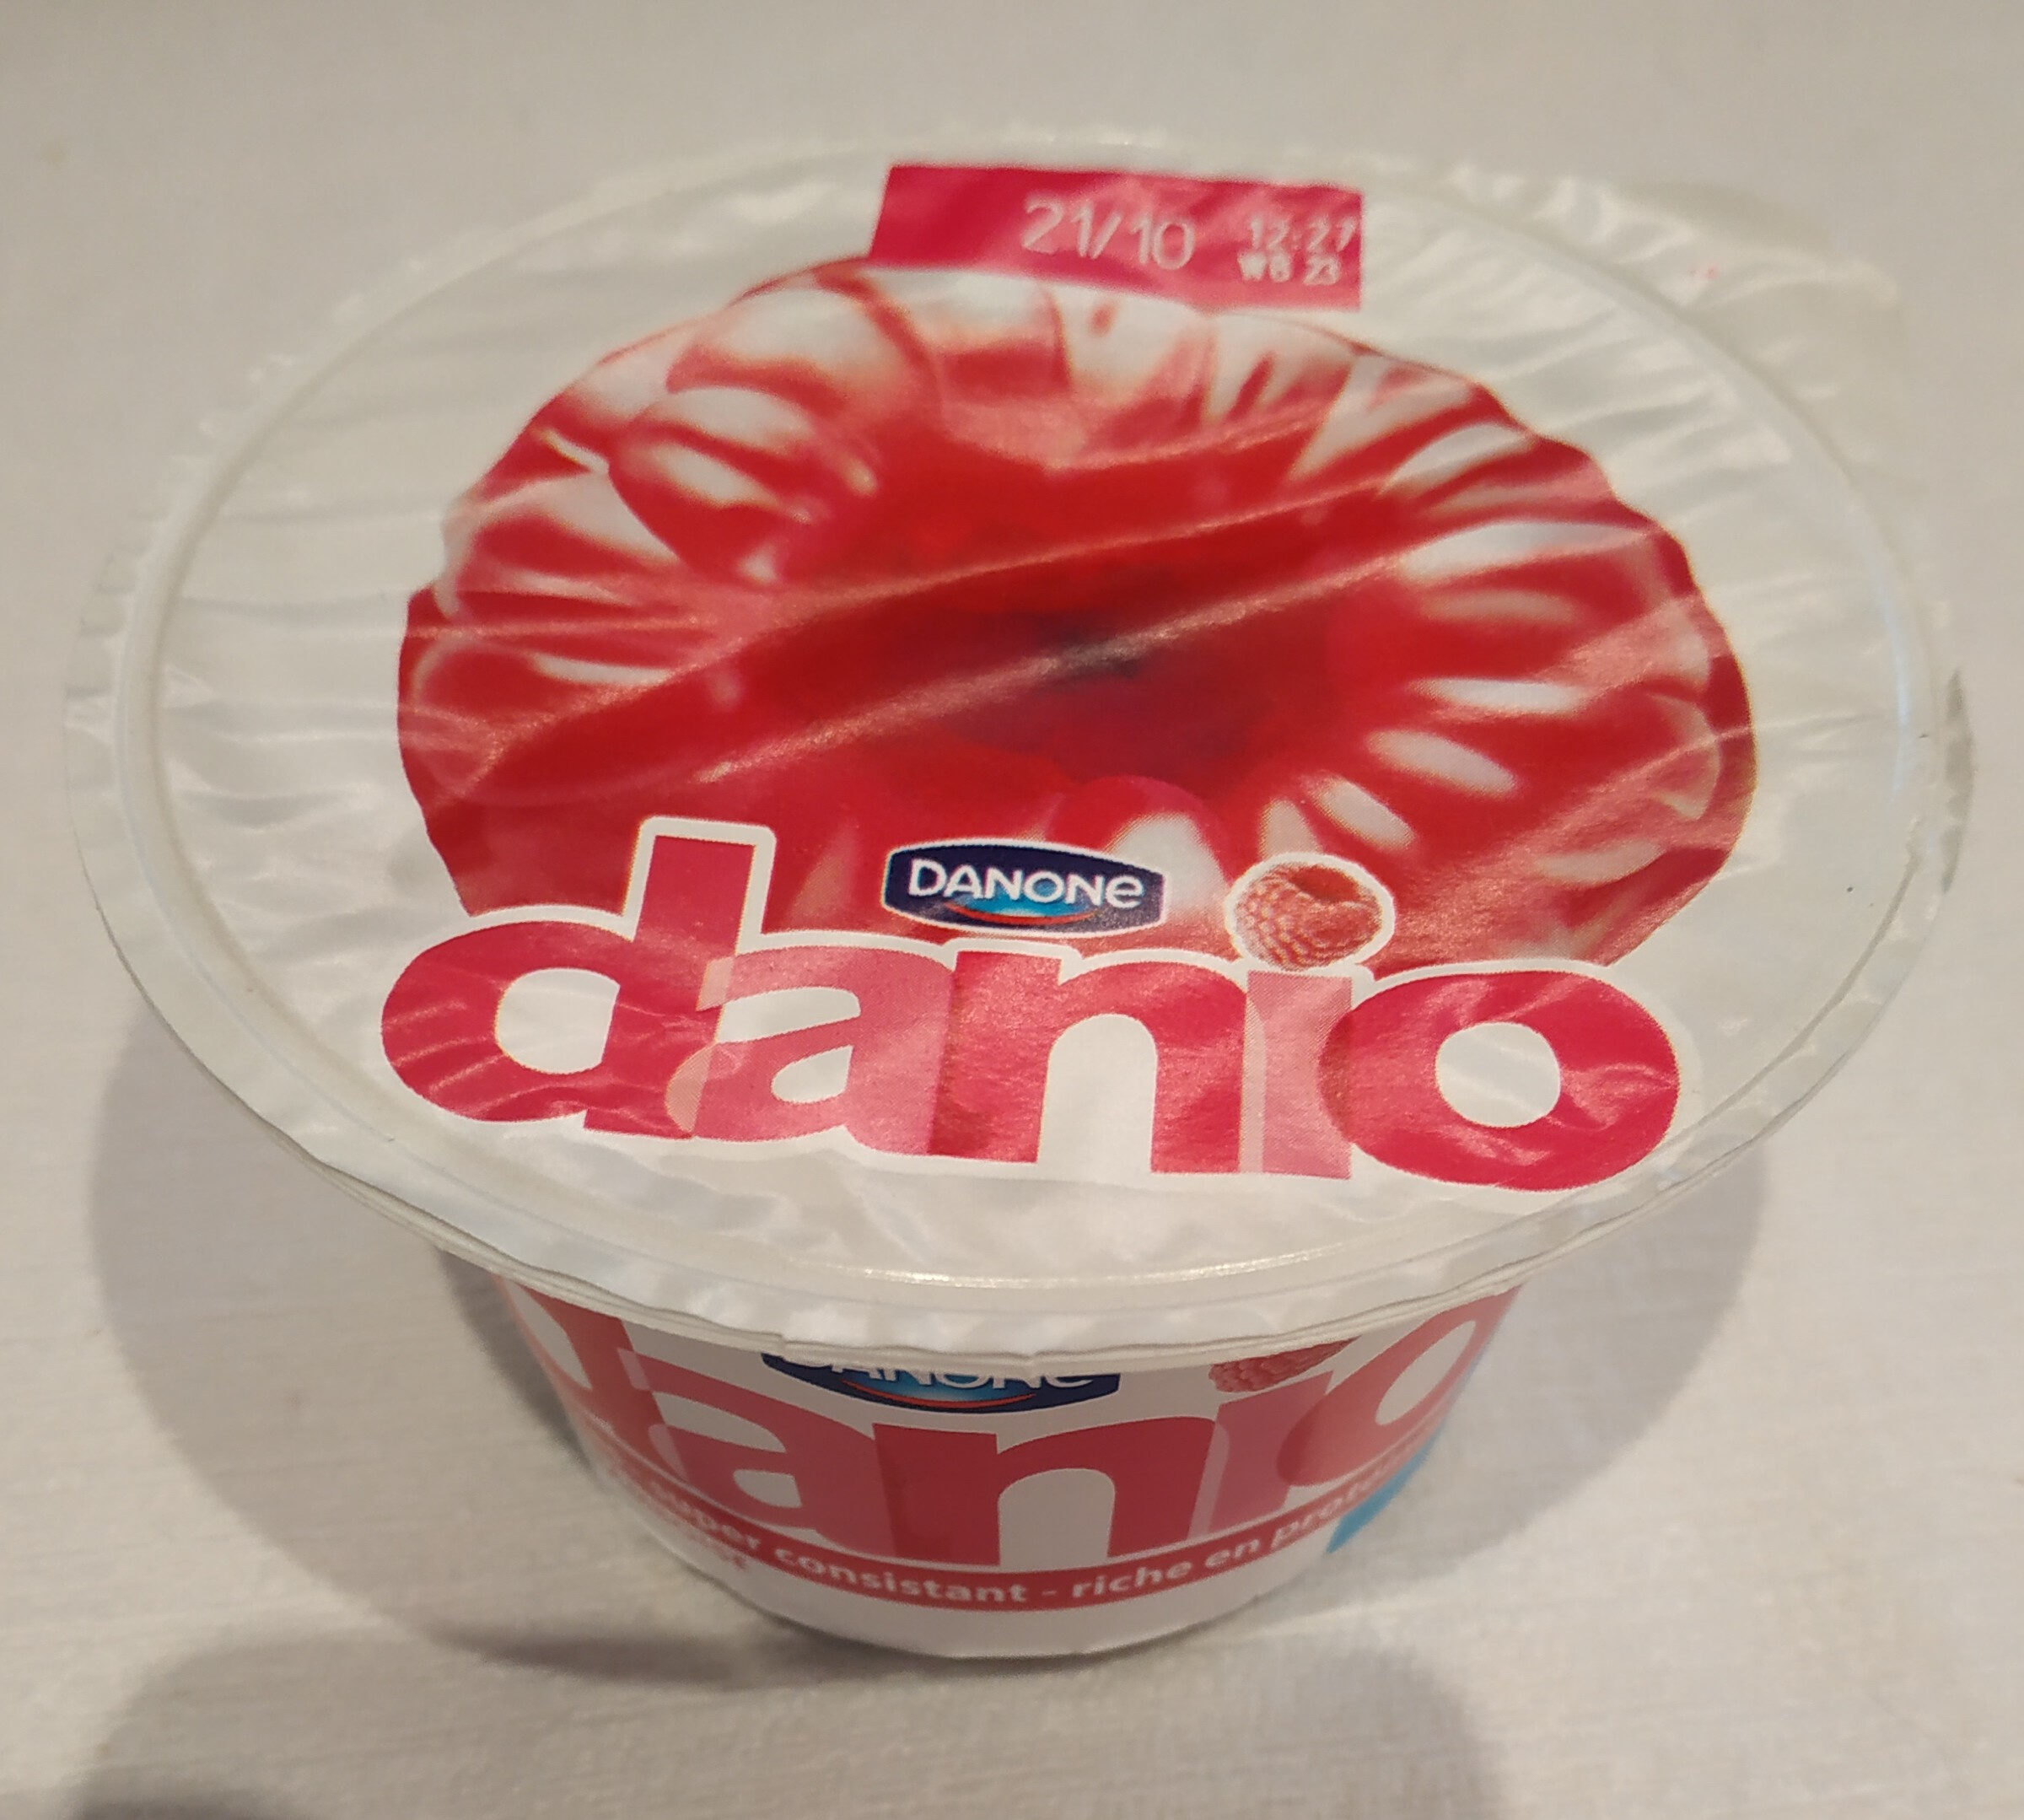 Danio - Encas super consistant - Framboise - Product - fr